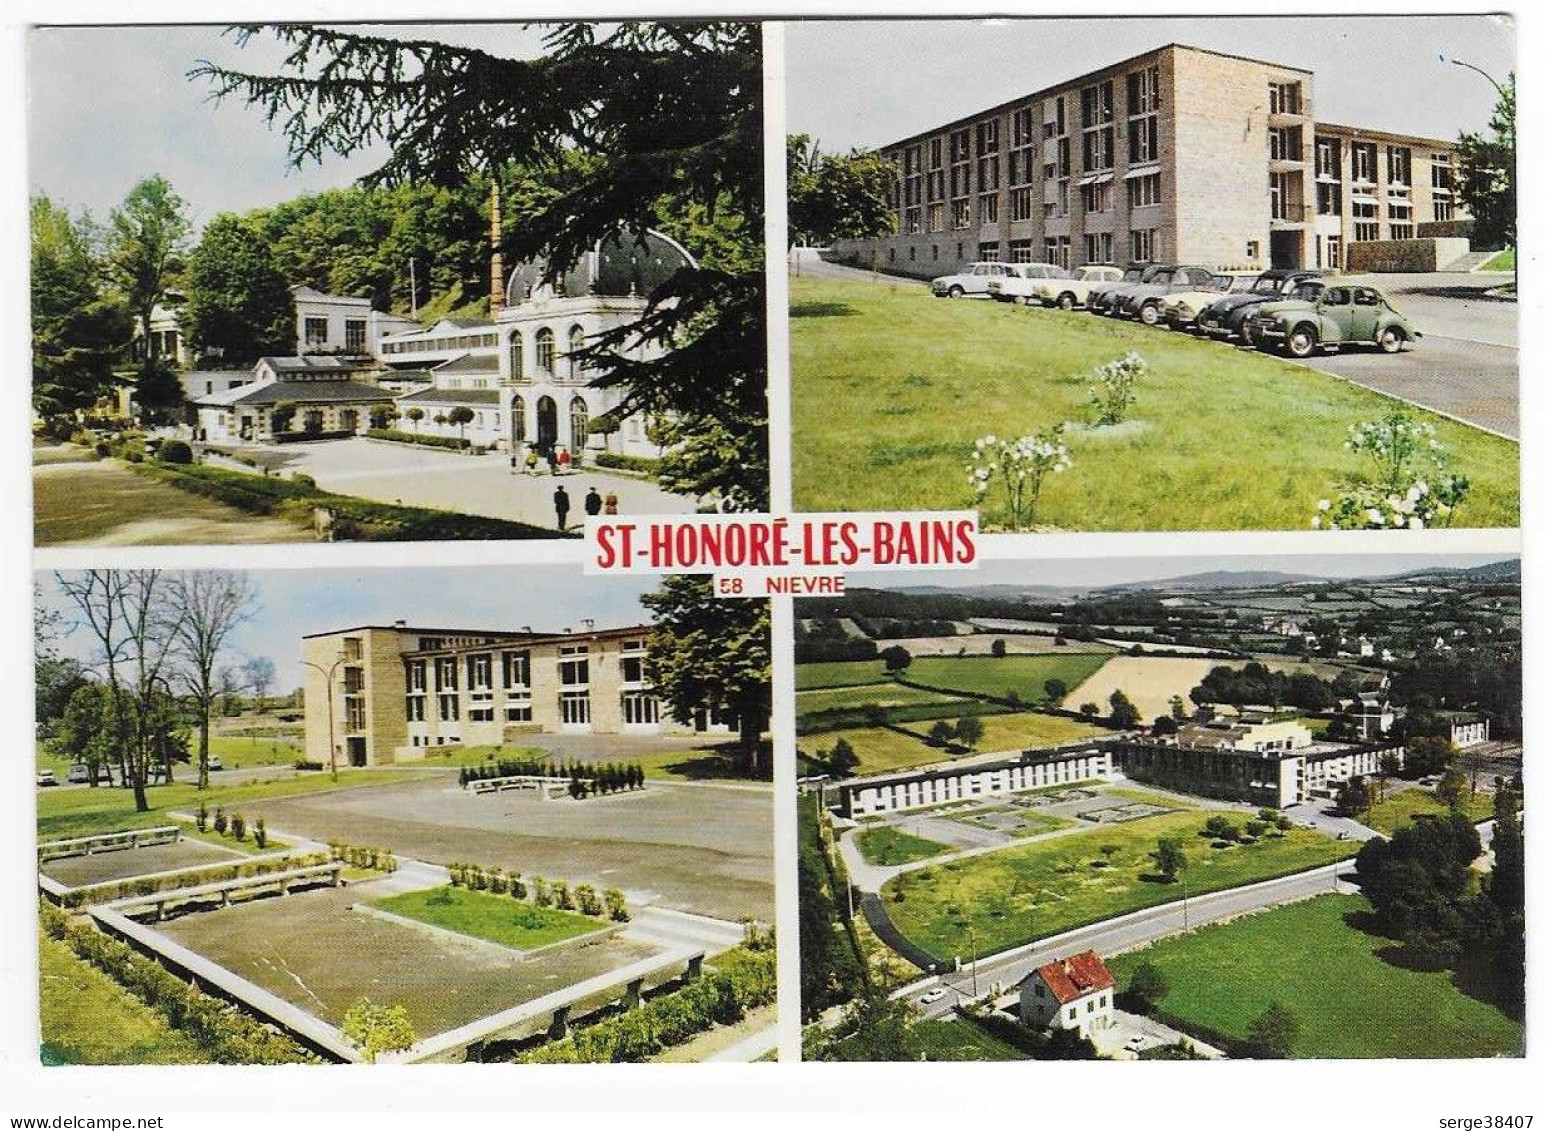 St Honoré Les Bains - Colonie Sanitaire De La Sécurité Sociale - 4CV Renault - 2CV - N°1710  # 5-24/15 - Saint-Honoré-les-Bains